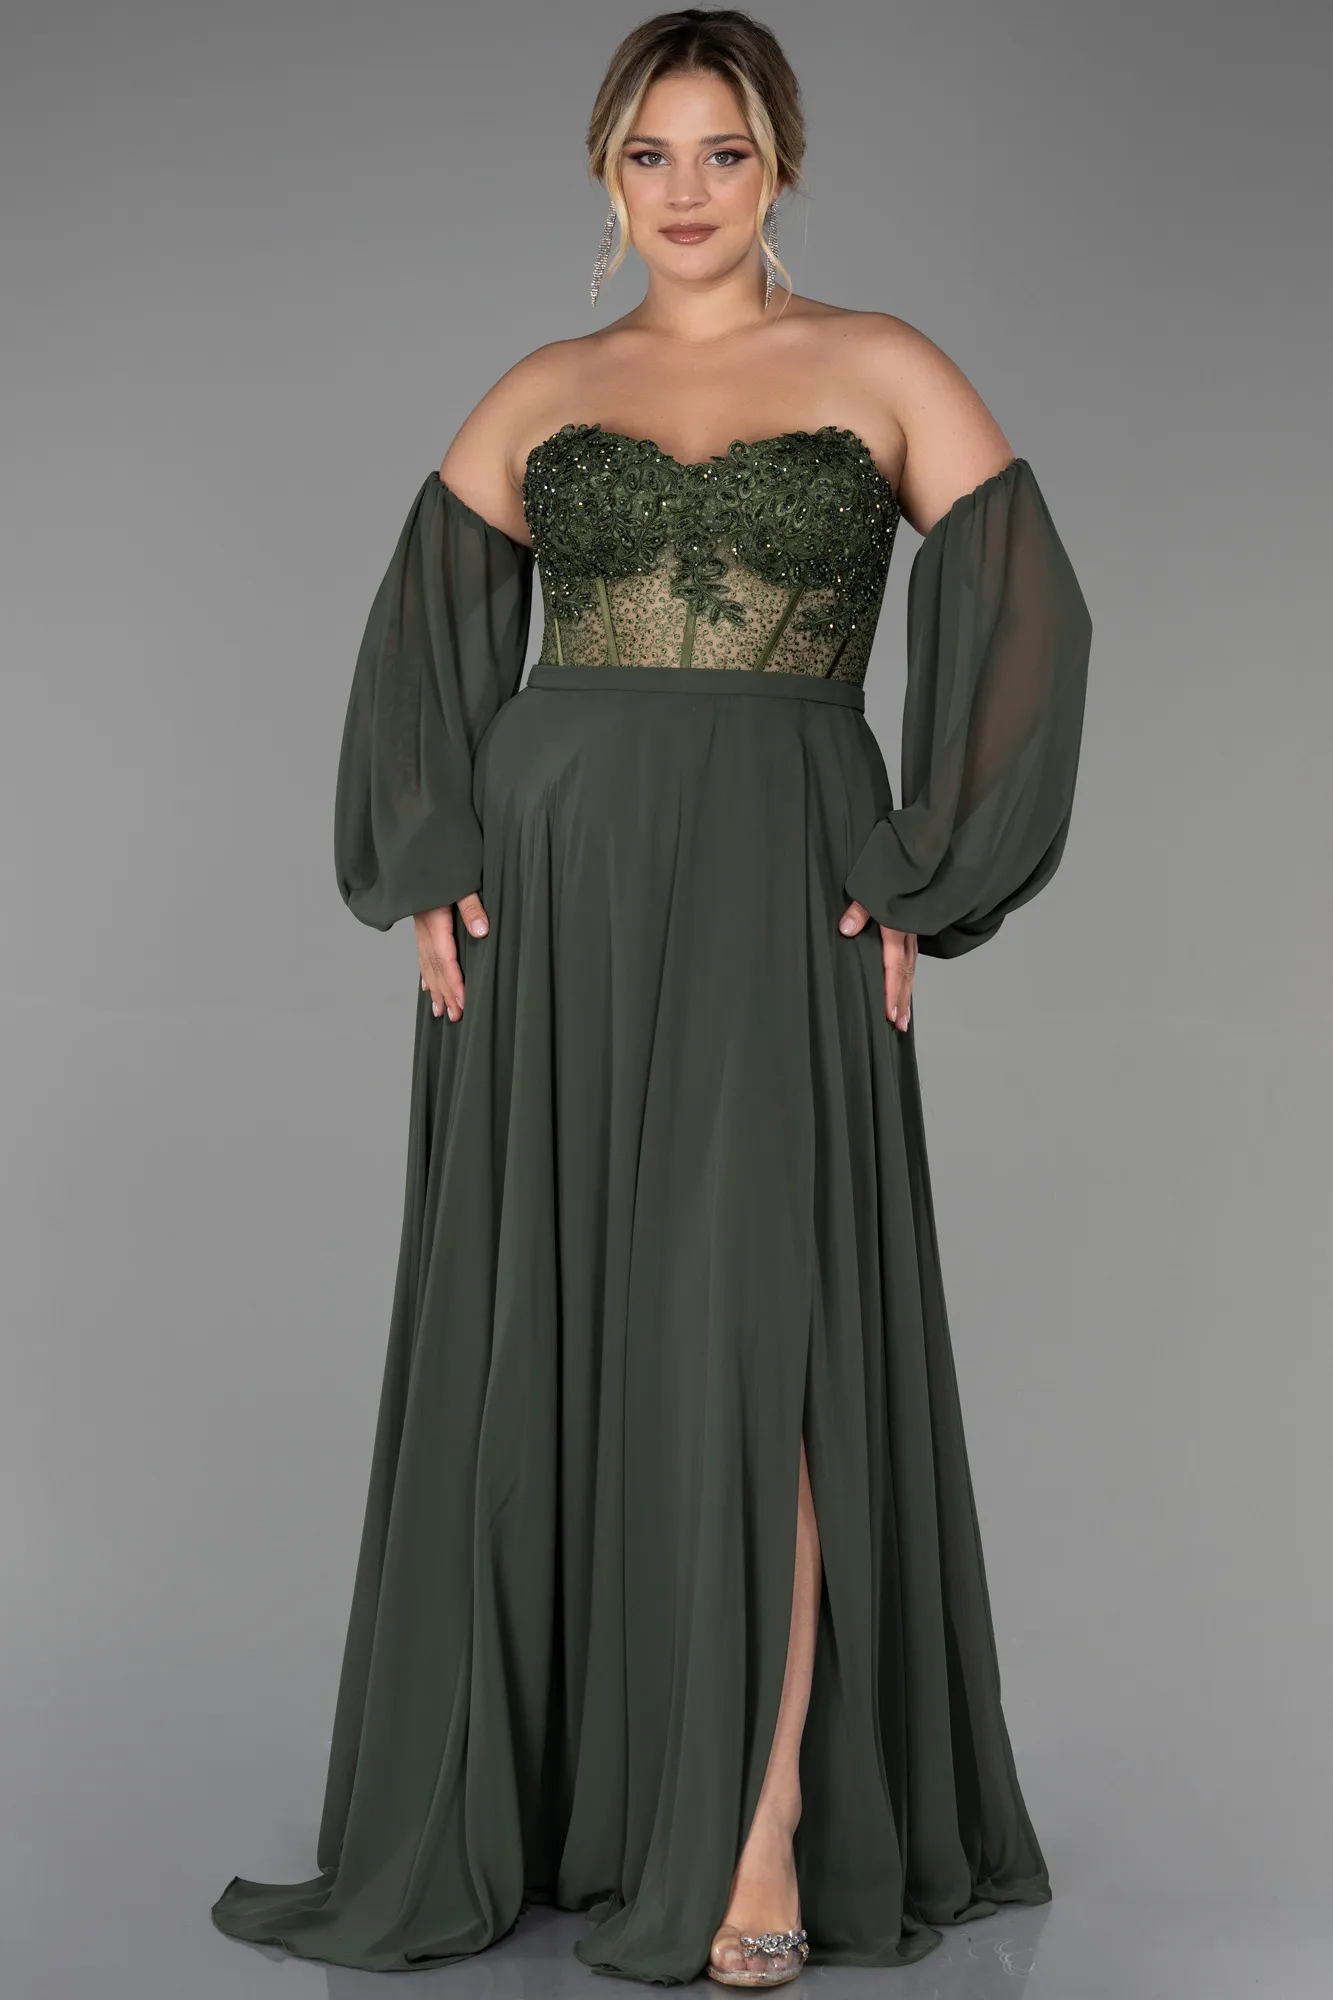 Olive Drab-Long Chiffon Plus Size Evening Dress ABU3451